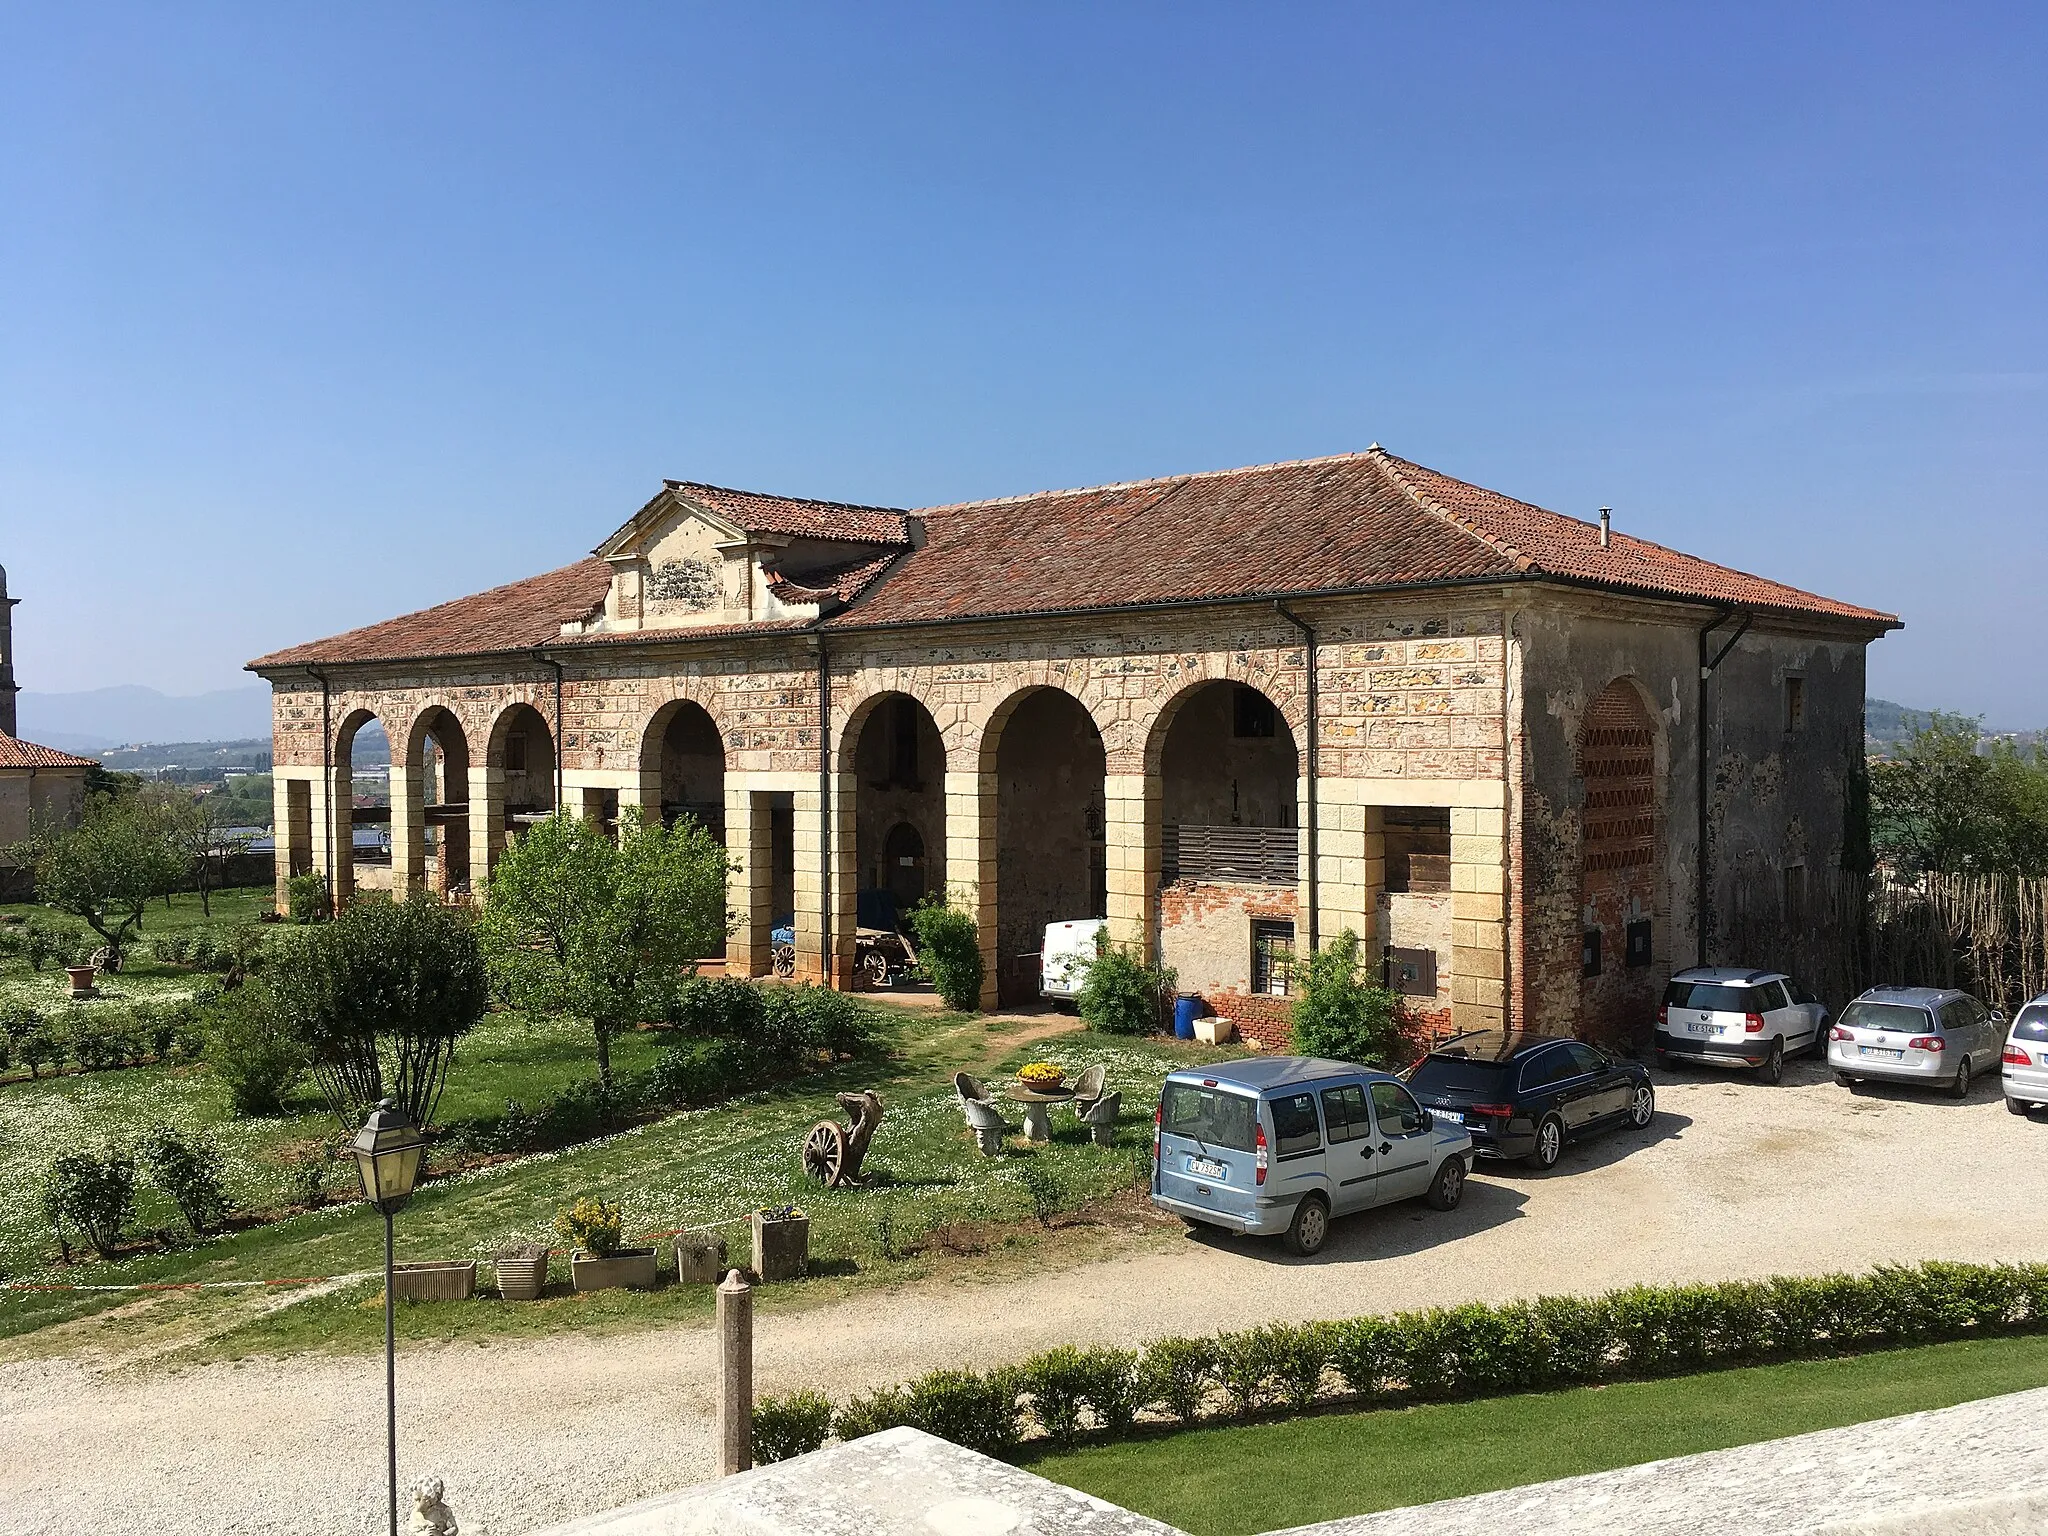 Photo showing: Villa da Porto called "La Favorita" in Monticello di Fara, Sarego, Vicenza.